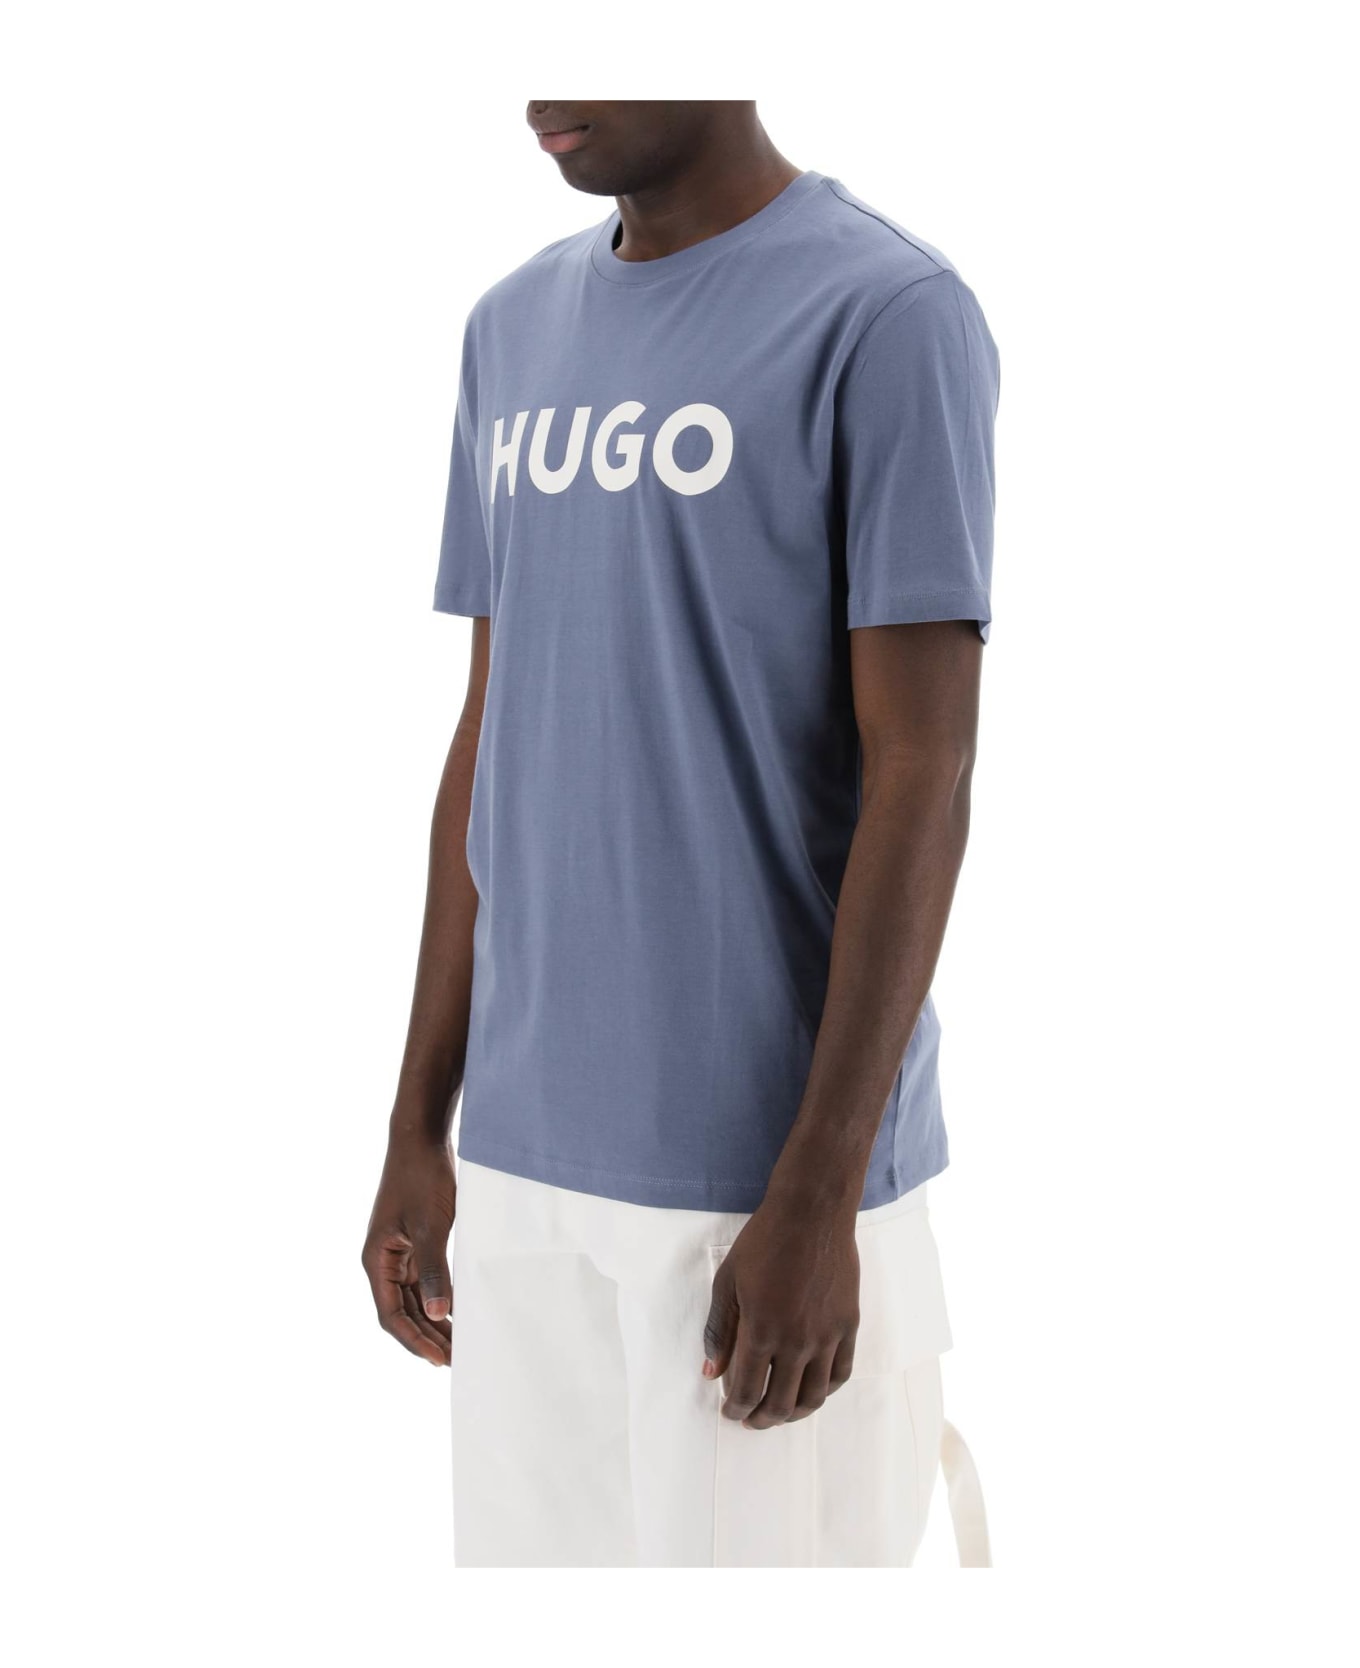 Hugo Boss Dulivio Logo T-shirt - OPEN BLUE (Light blue)